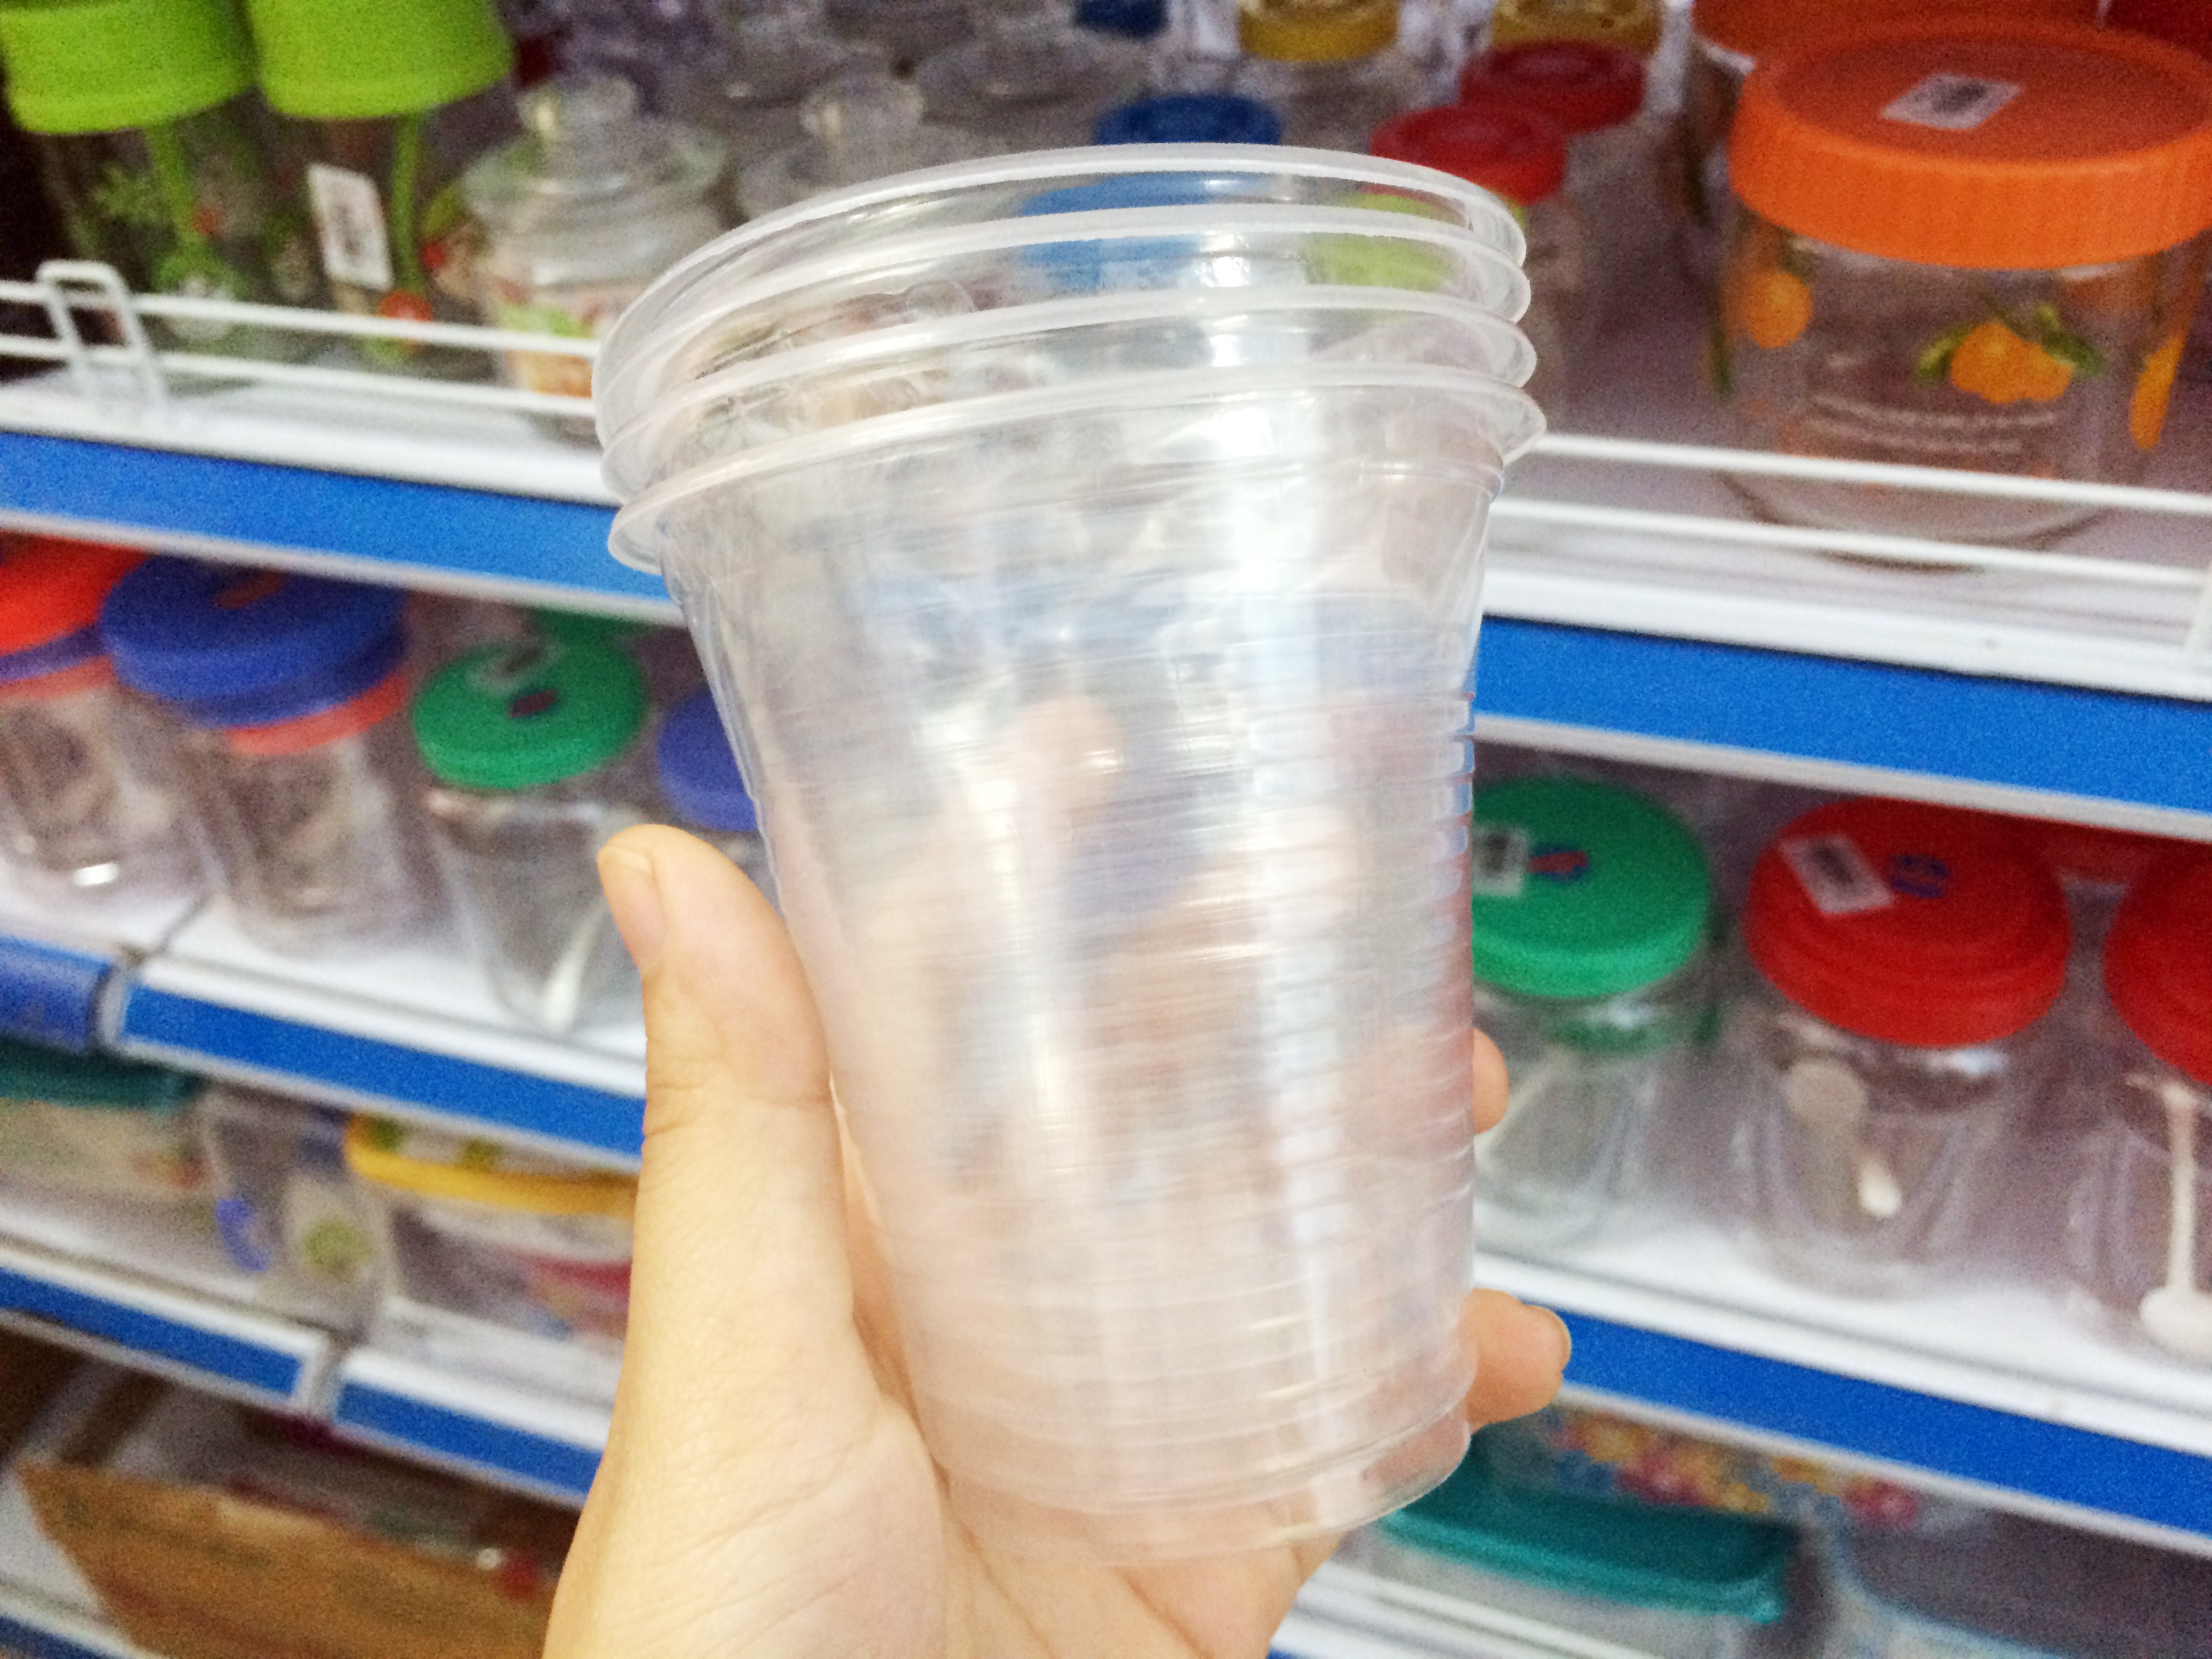 Đồ nhựa dùng một lần: Bị “cấm cửa” tại nhiều nước, Việt Nam vẫn bày bán tràn lan